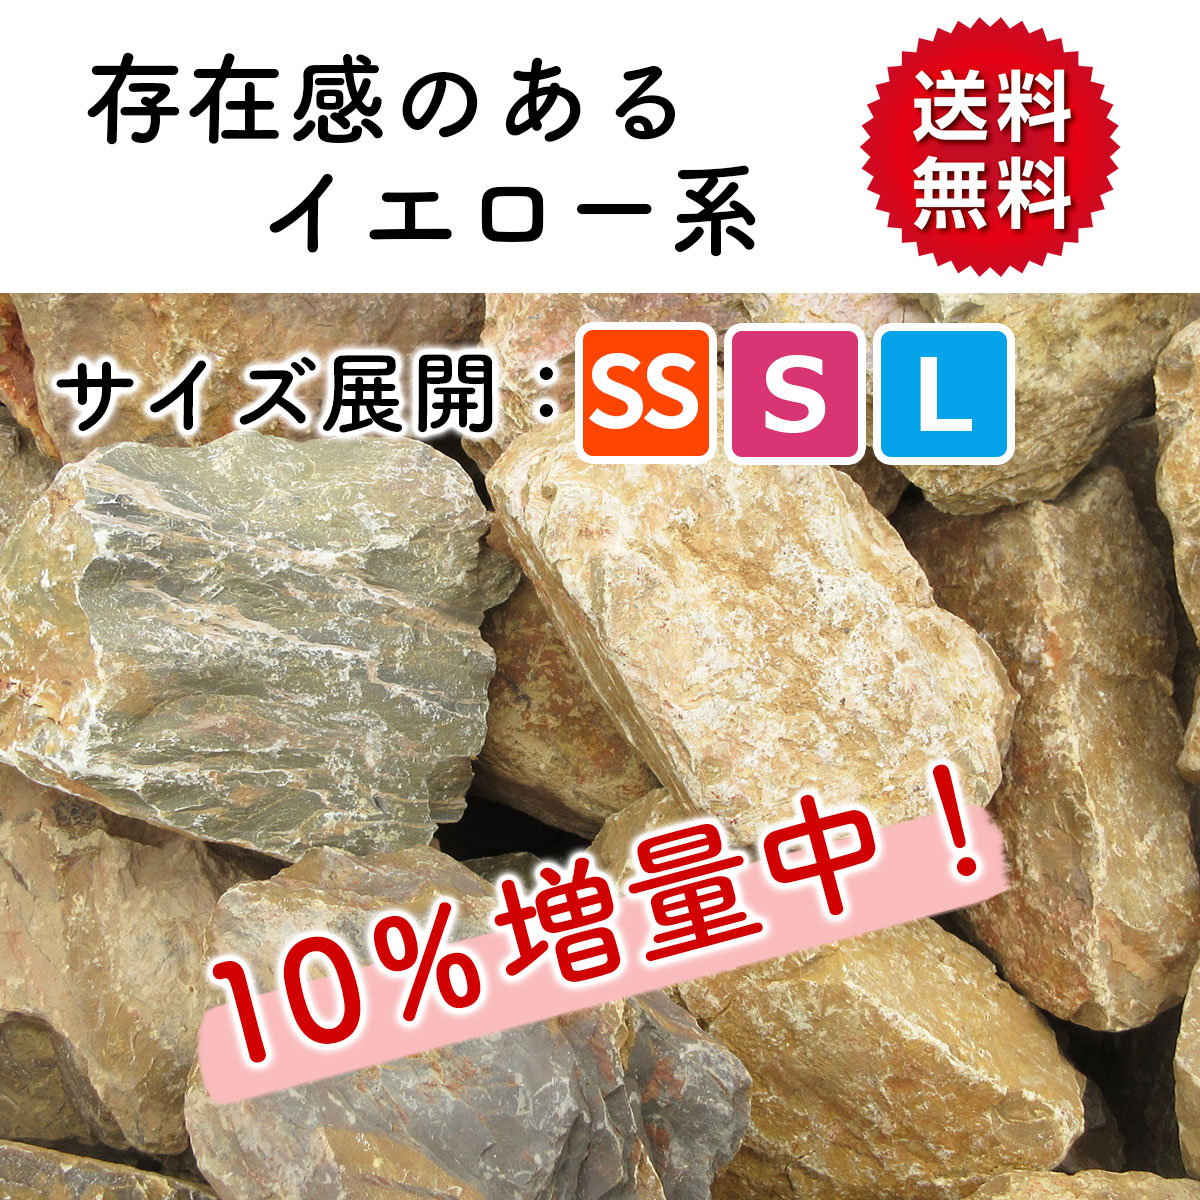 誠実】 庭石 ピンク S 110kg (22kgx5箱) ロックガーデン 10％増量中 割